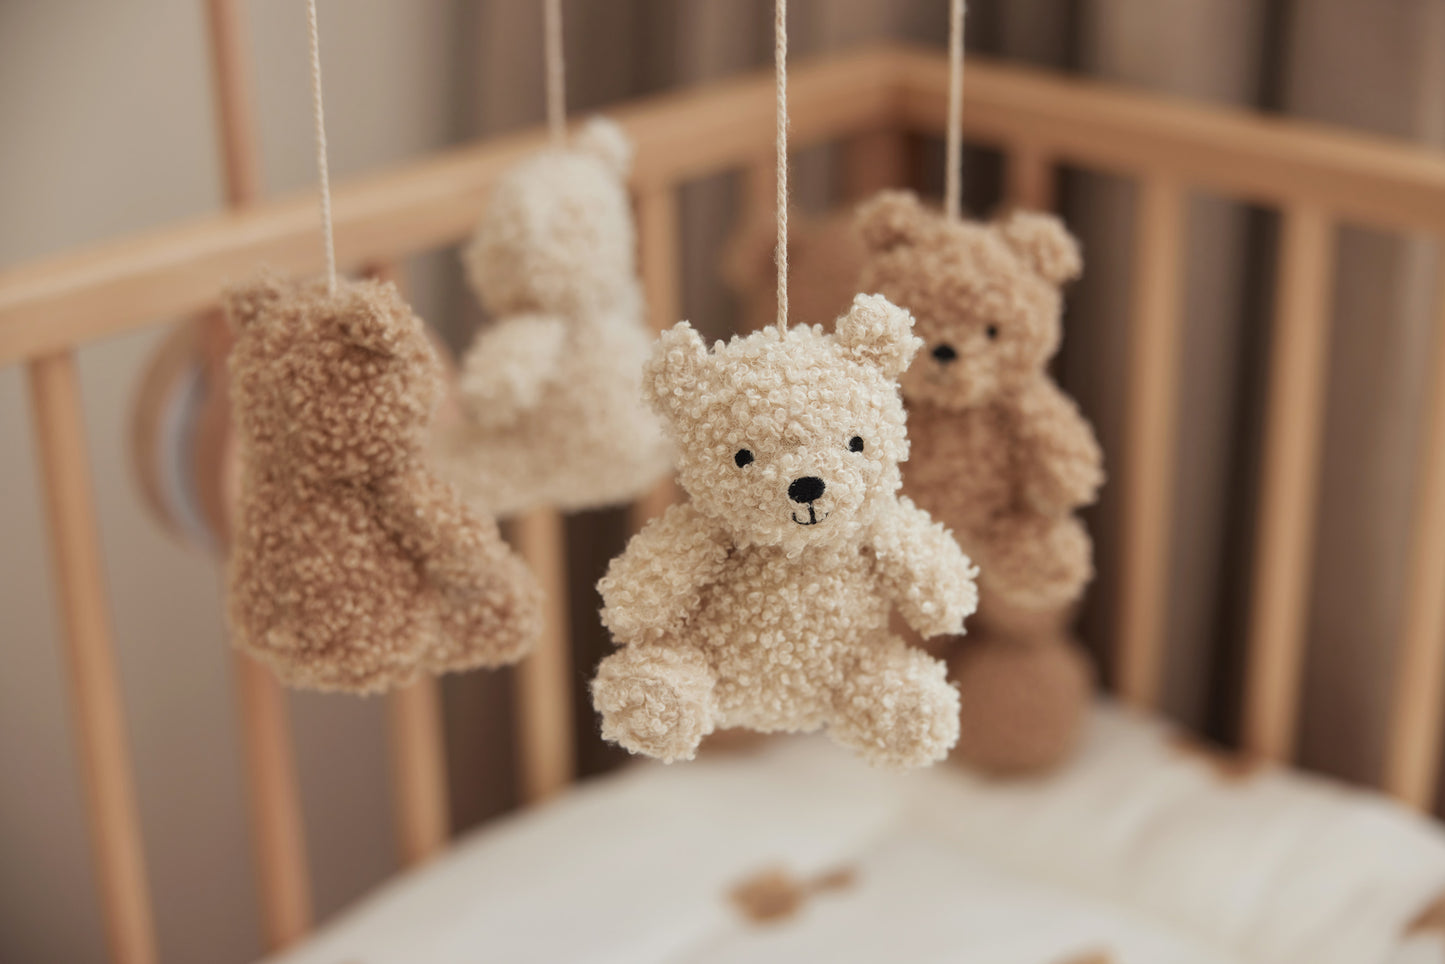 Mobile bébé - Teddy bear